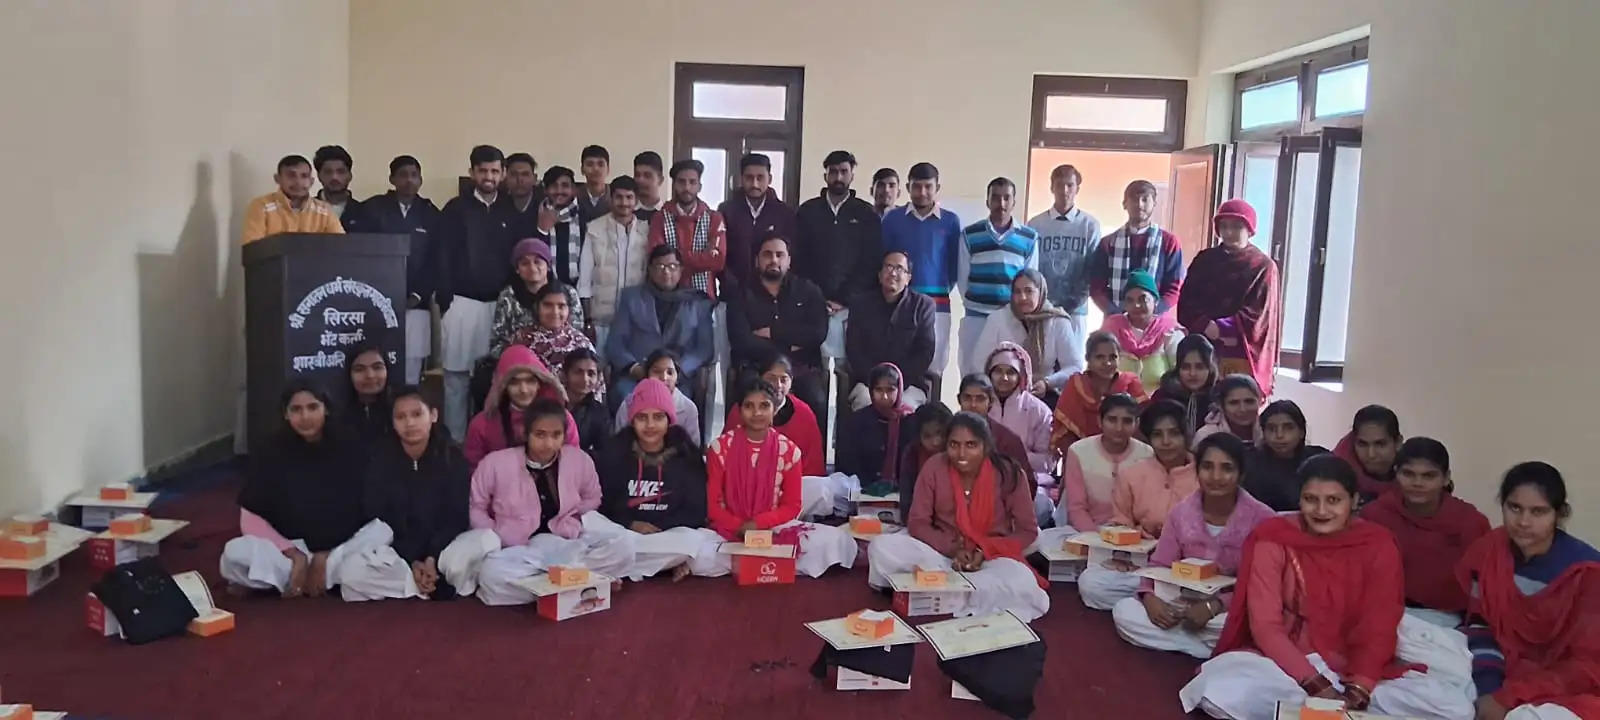 श्री सनातन धर्म संस्कृत महाविद्यालय में पारितोषिक कार्यक्रम आयोजित